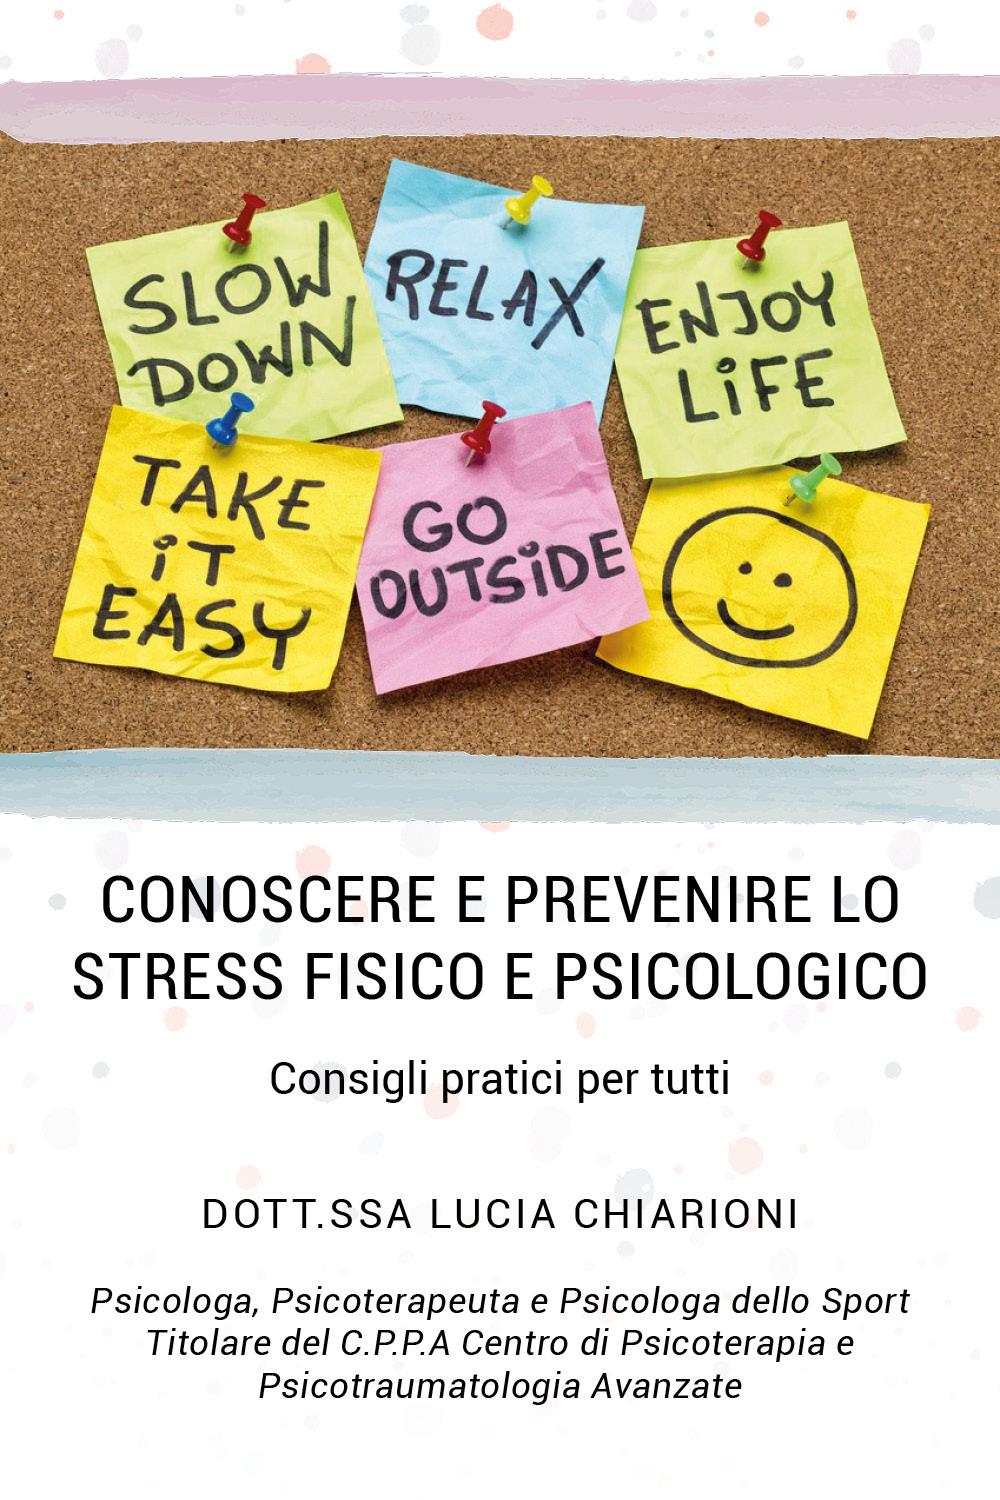 Conoscere e prevenire lo stress fisico e psicologico - Consigli pratici per tutti